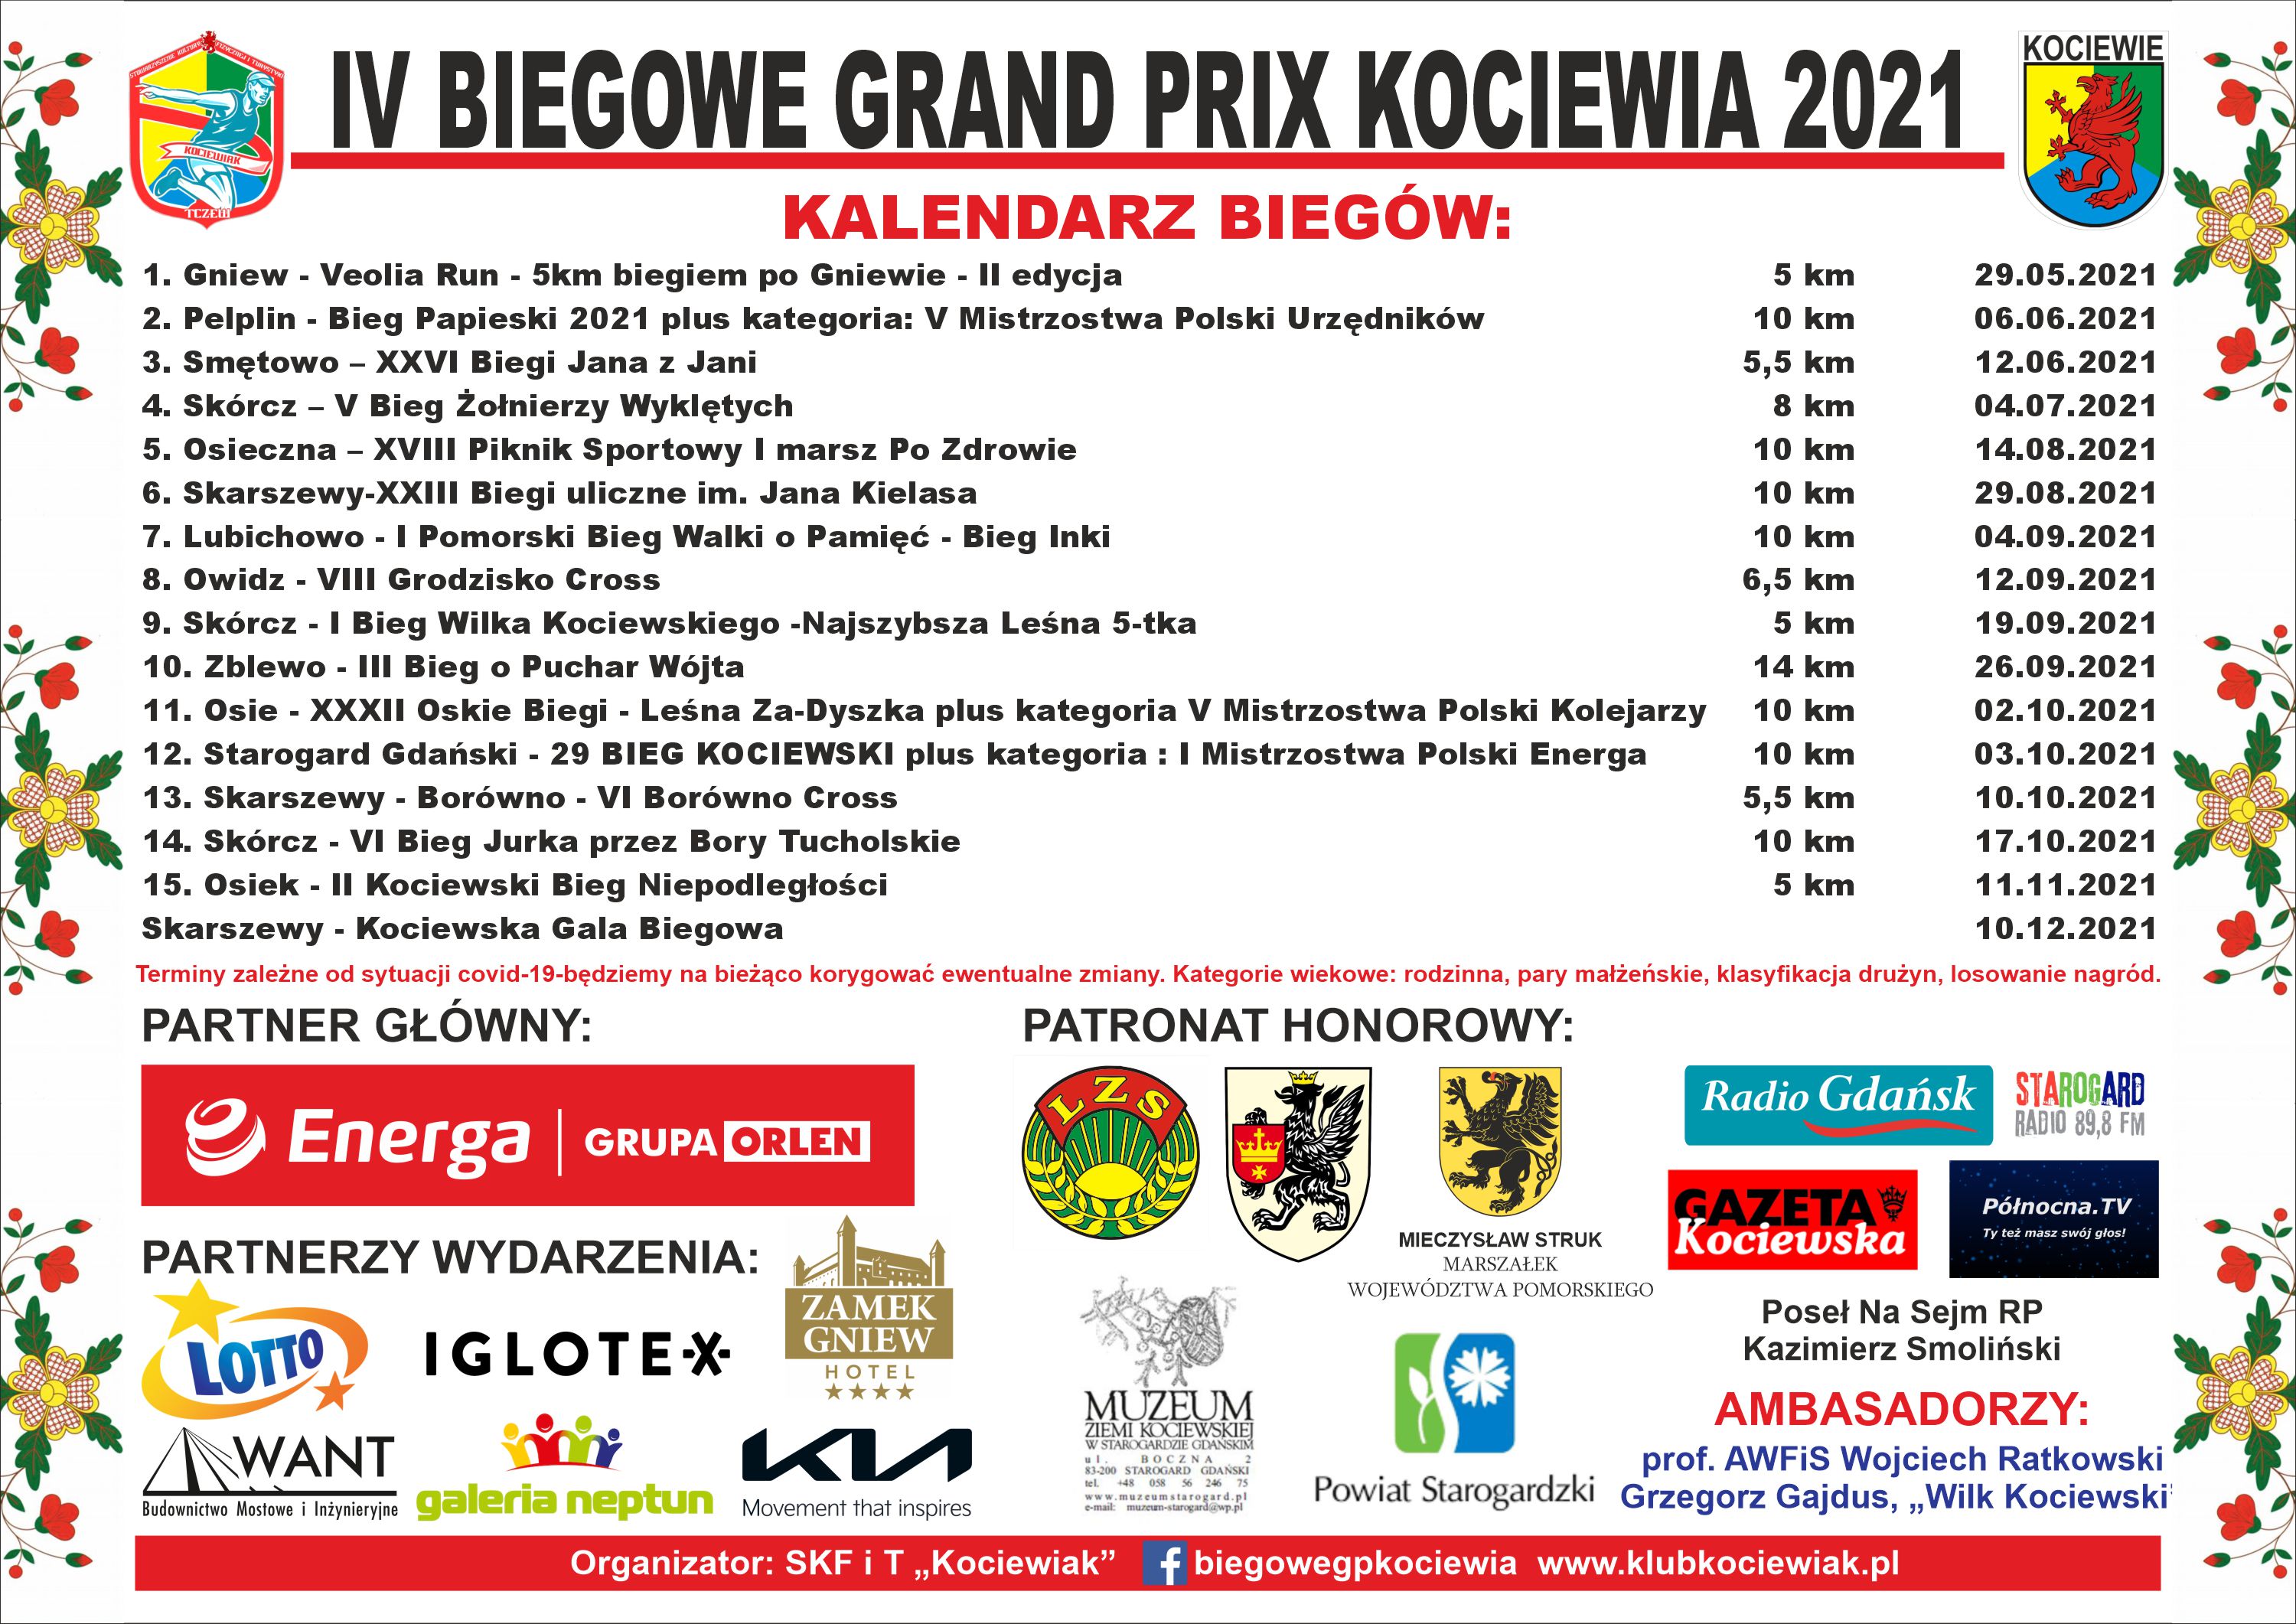 Iglotex wśród partnerów IV Biegowego Grand Prix Kociewia 2021